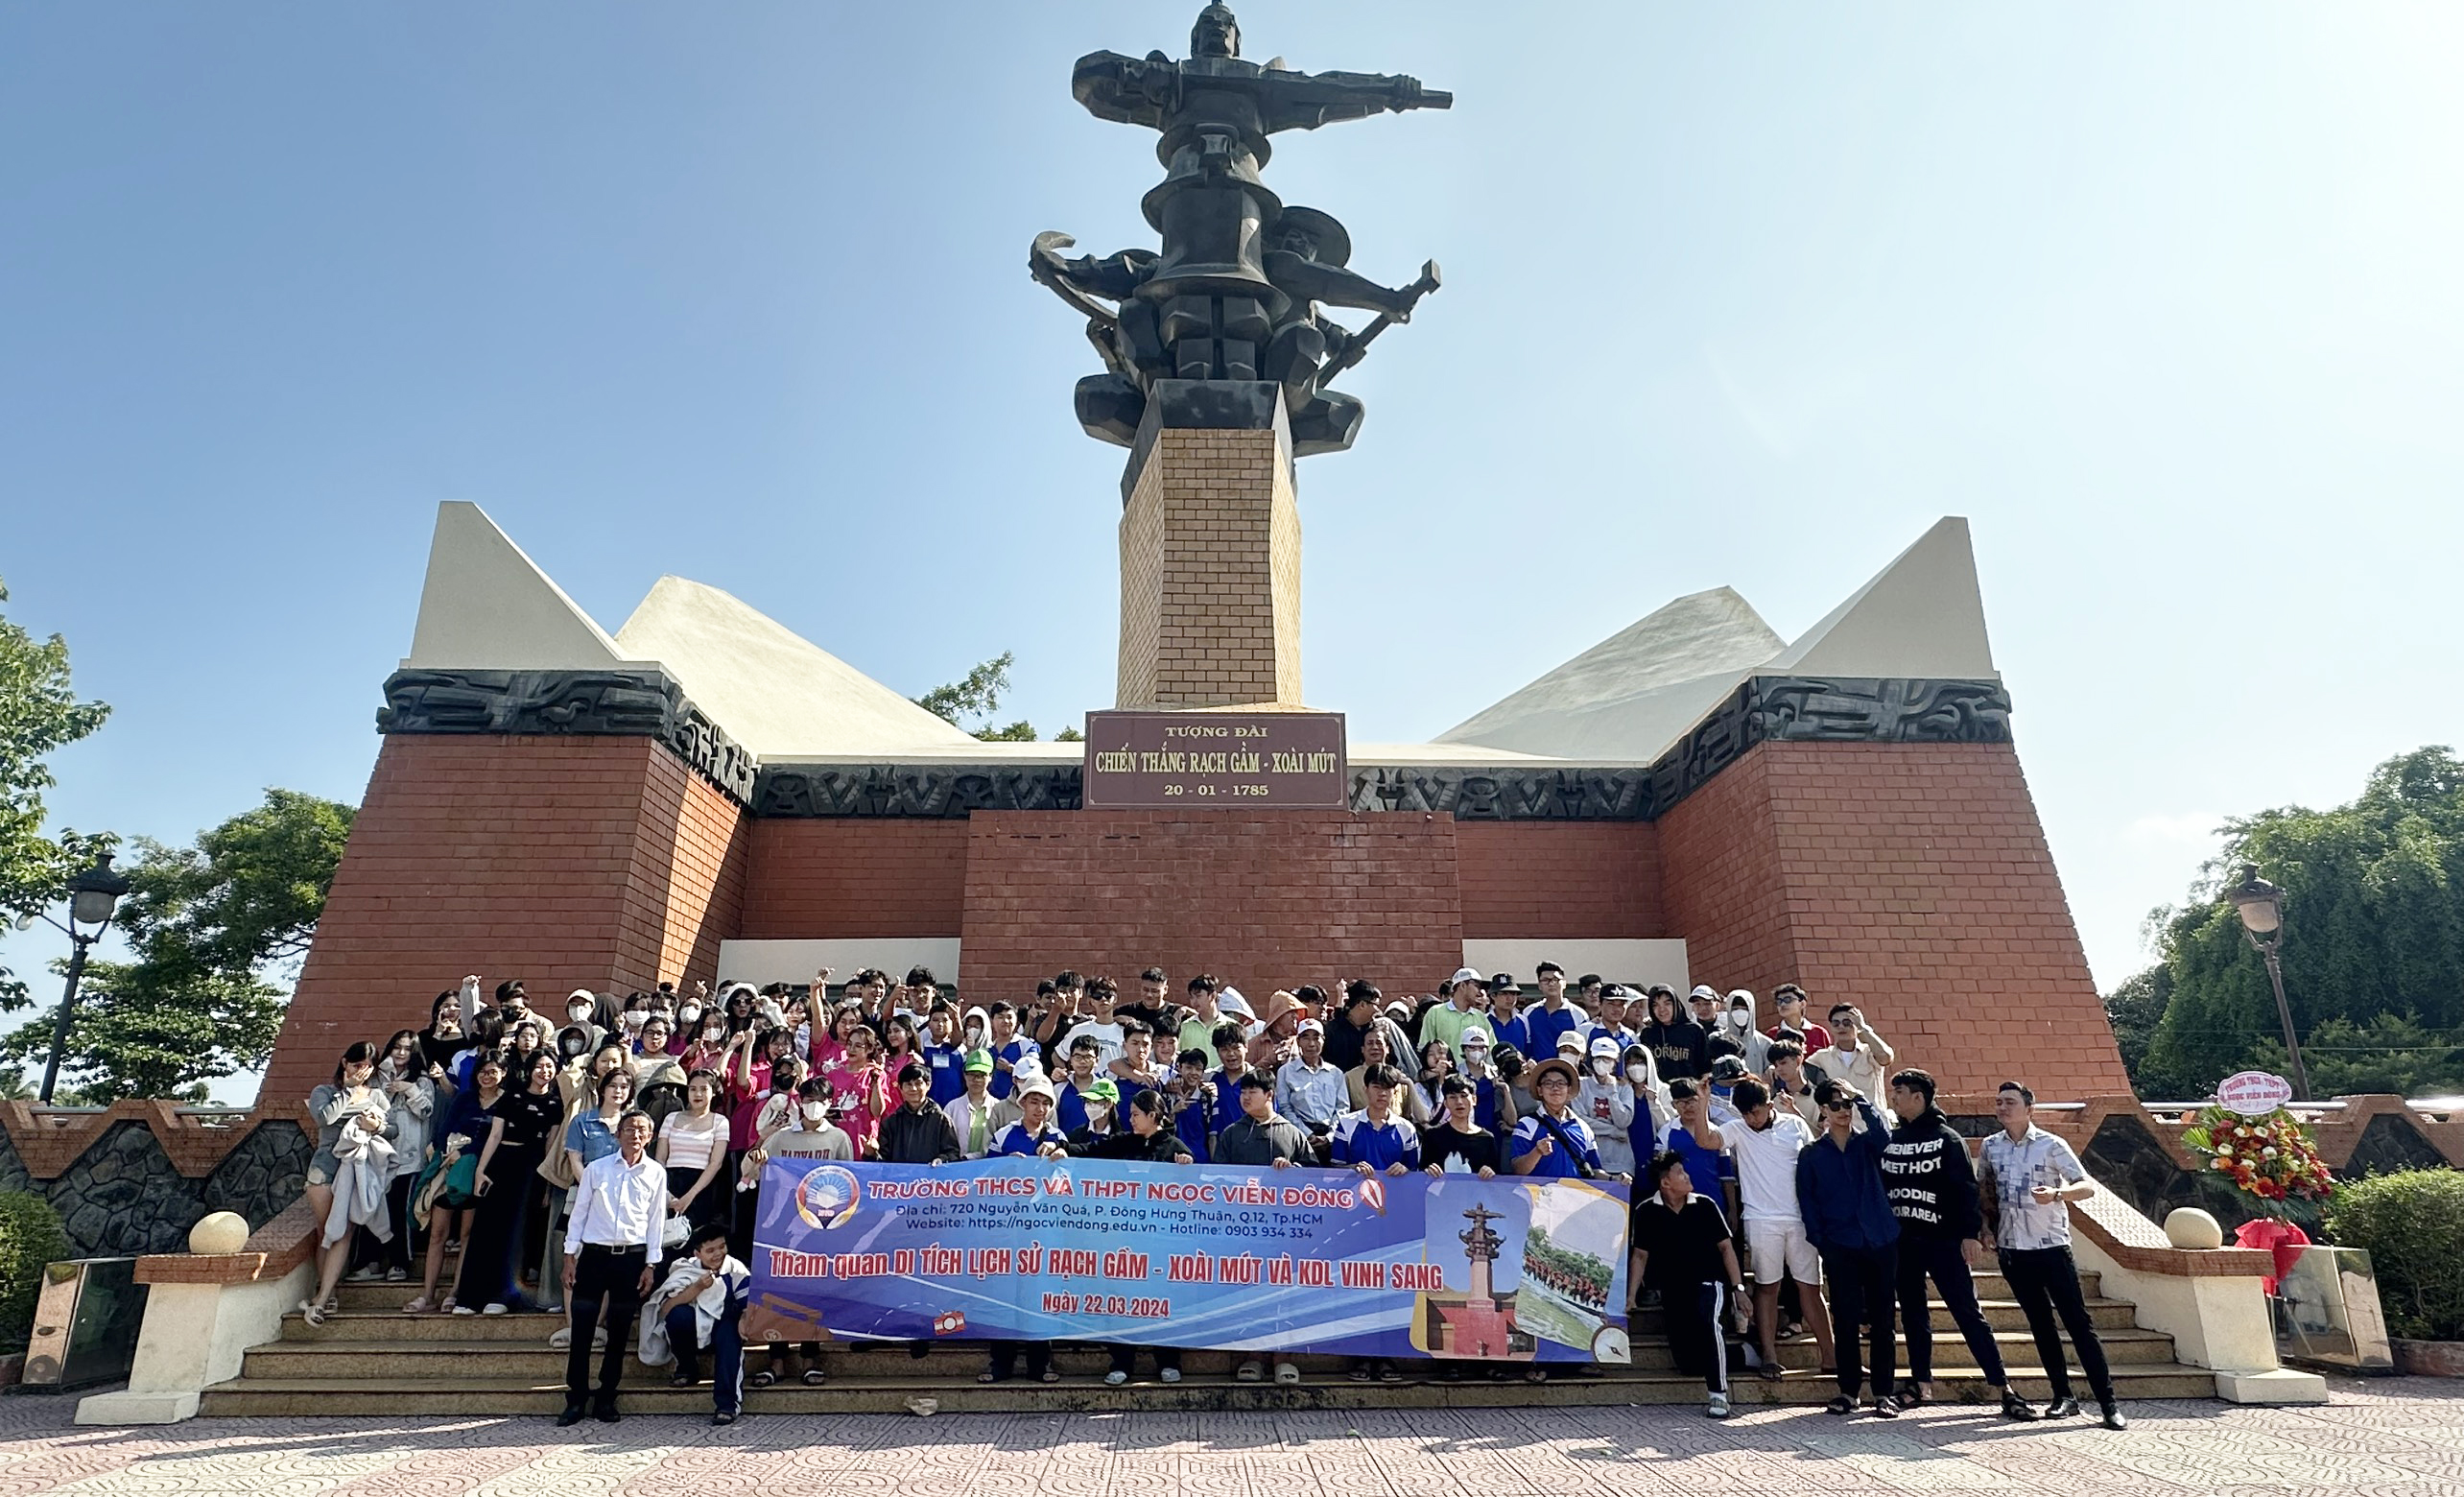 Trải nghiệm thực tiễn khu du lịch Vinh Sang - Khu di tích Rạch Gầm Xoài Mút - Chùa VĨnh Tràng của trường THCS và THPT Ngọc Viễn Đông